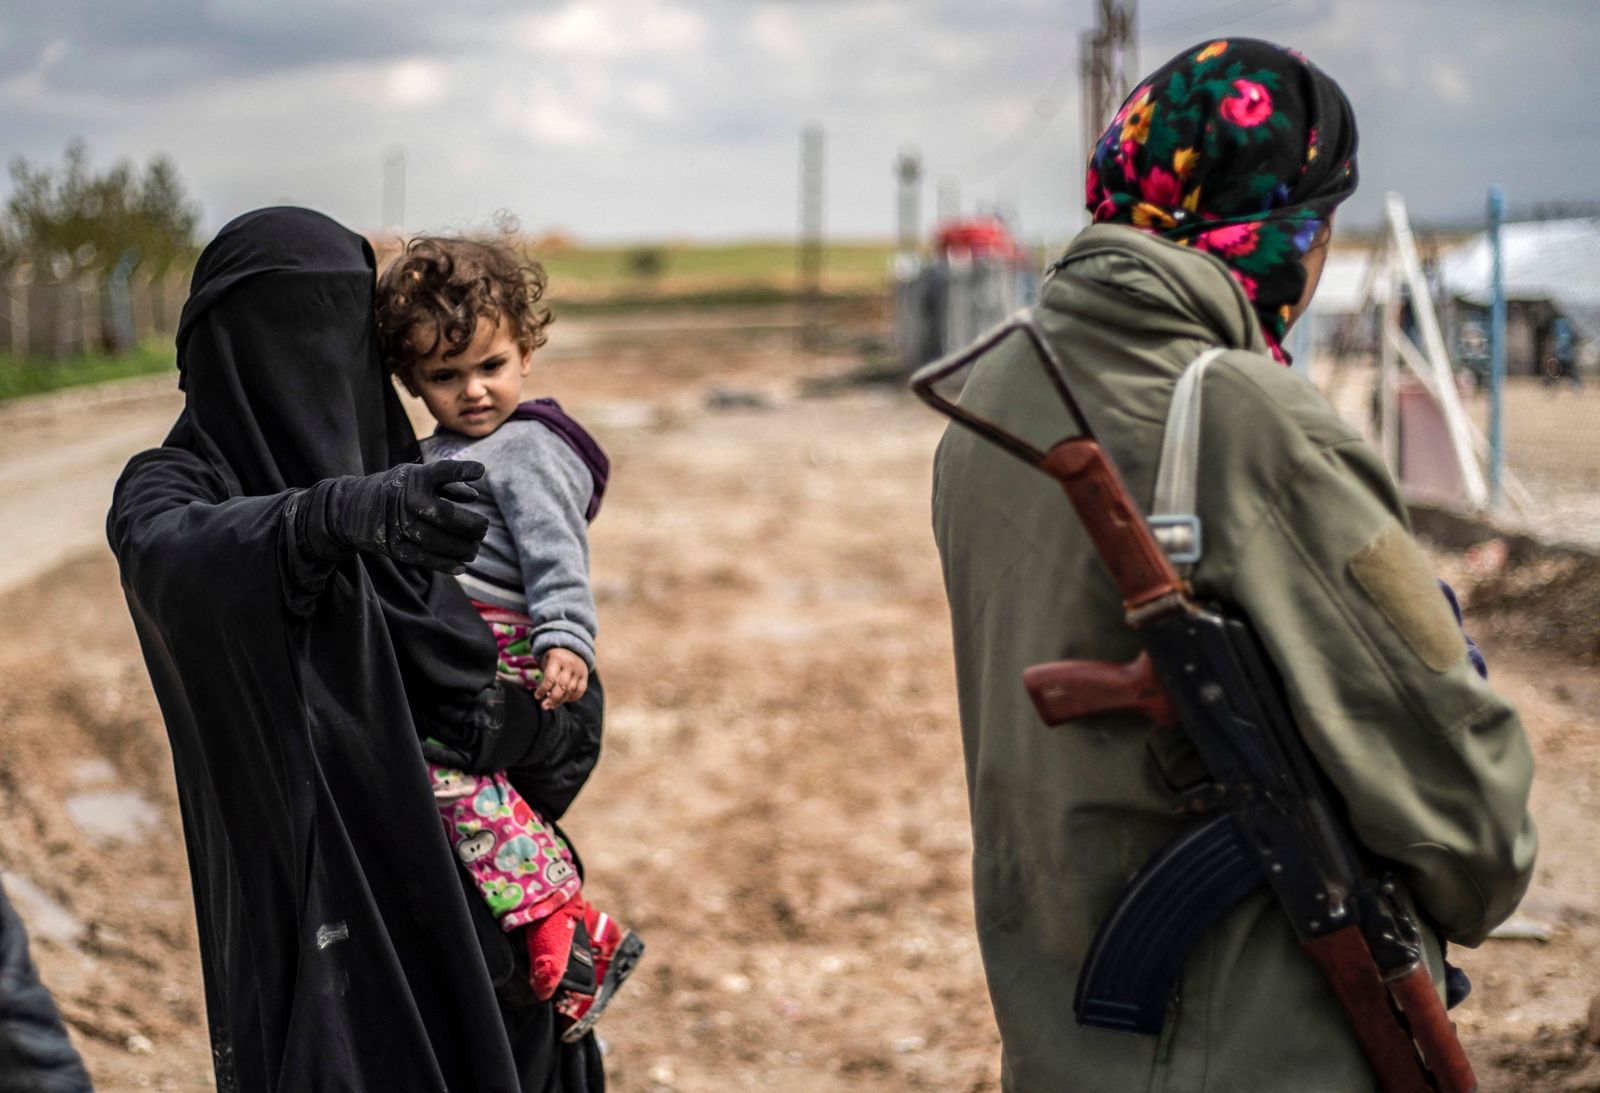 محتجزة أجنبية في مخيم الهول شمالي سوريا تحمل طفلتها، وتتحدث إلى أحد عناصر قوات سوريا الديمقراطية (قسد) التي تدير المخيم- 28 مارس 2019 - AFP